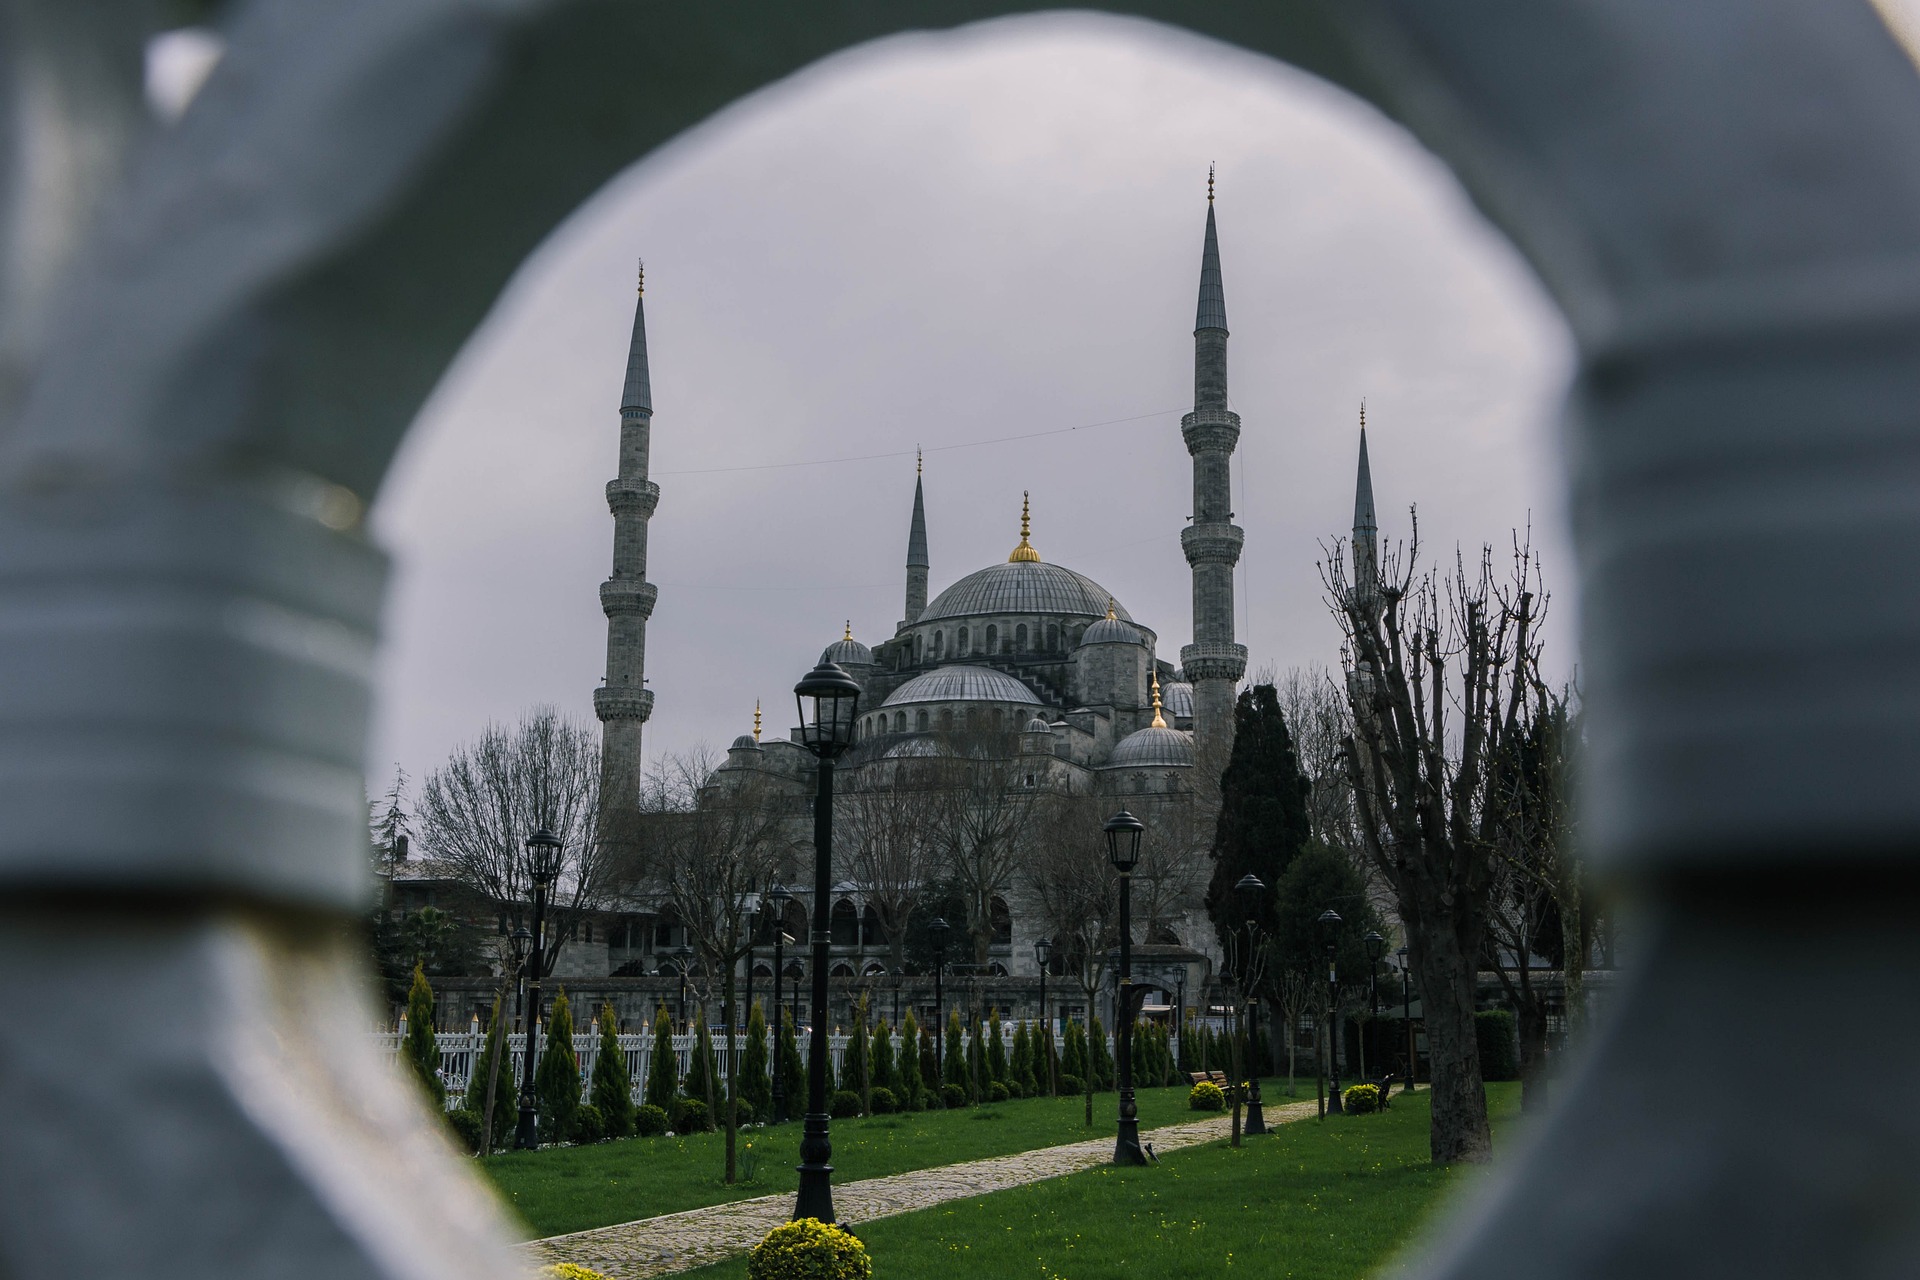 Σεισμός στην Τουρκία: «Κοινό μυστικό» των σεισμολόγων ένας ισχυρός σεισμός στην Κωνσταντινούπολη